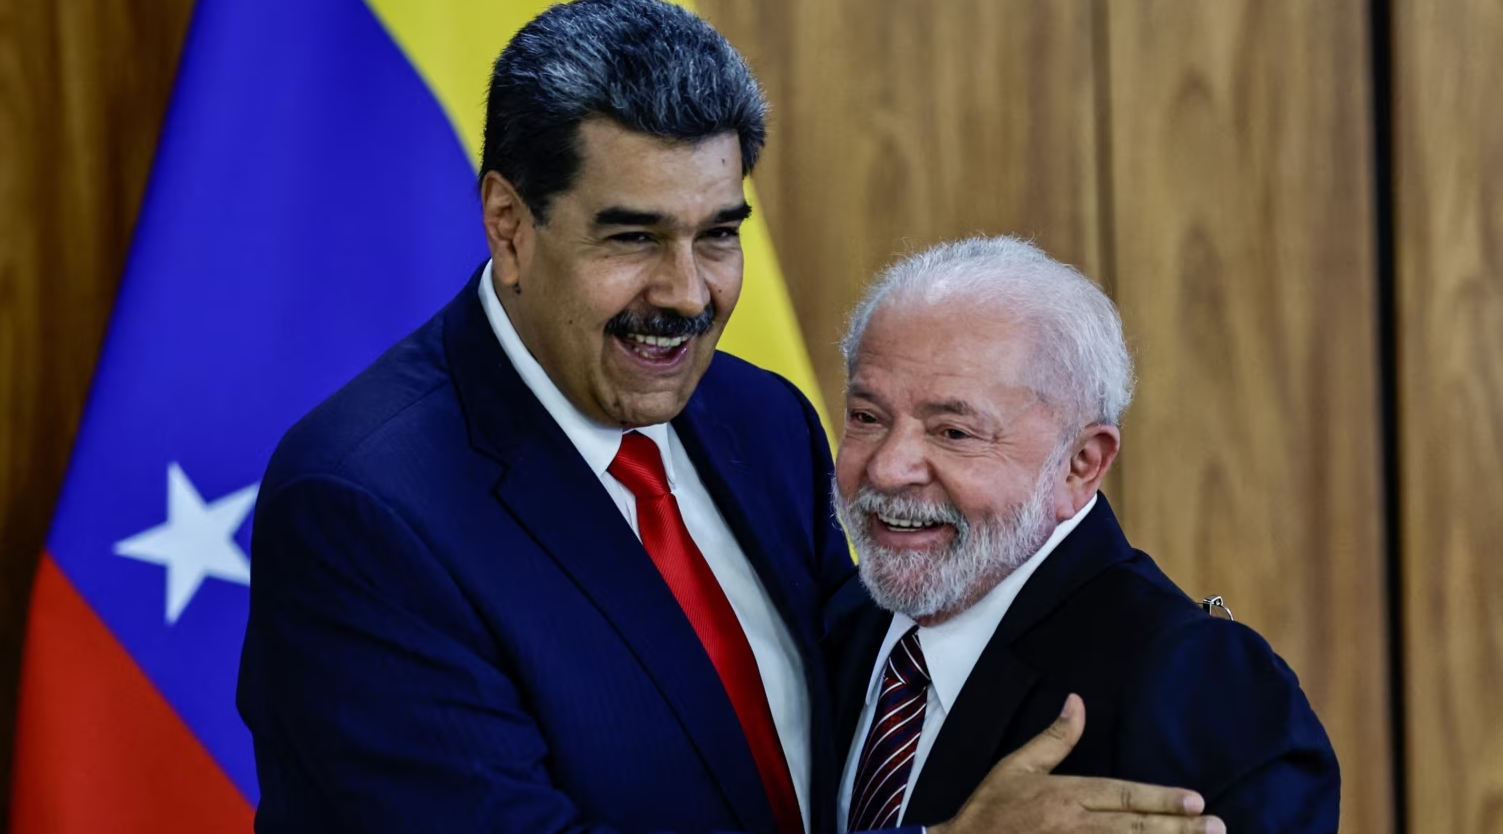 Cumbre de presidentes en Brasil, otro “salvavidas” al aislamiento internacional de Maduro, según expertos